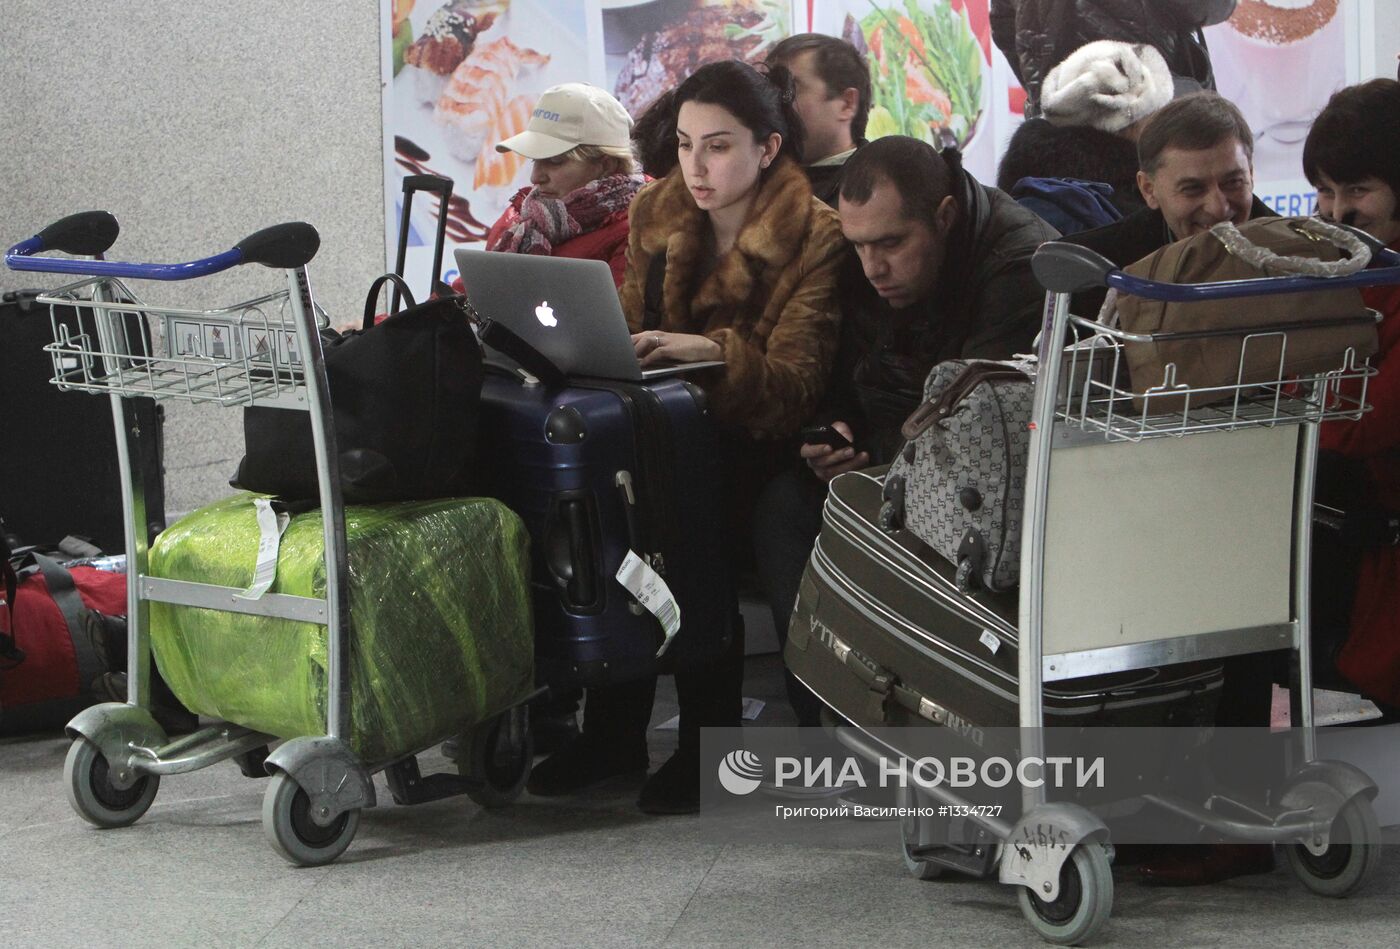 Задержка рейсов авиакомпании "АэроСвит" на Украине